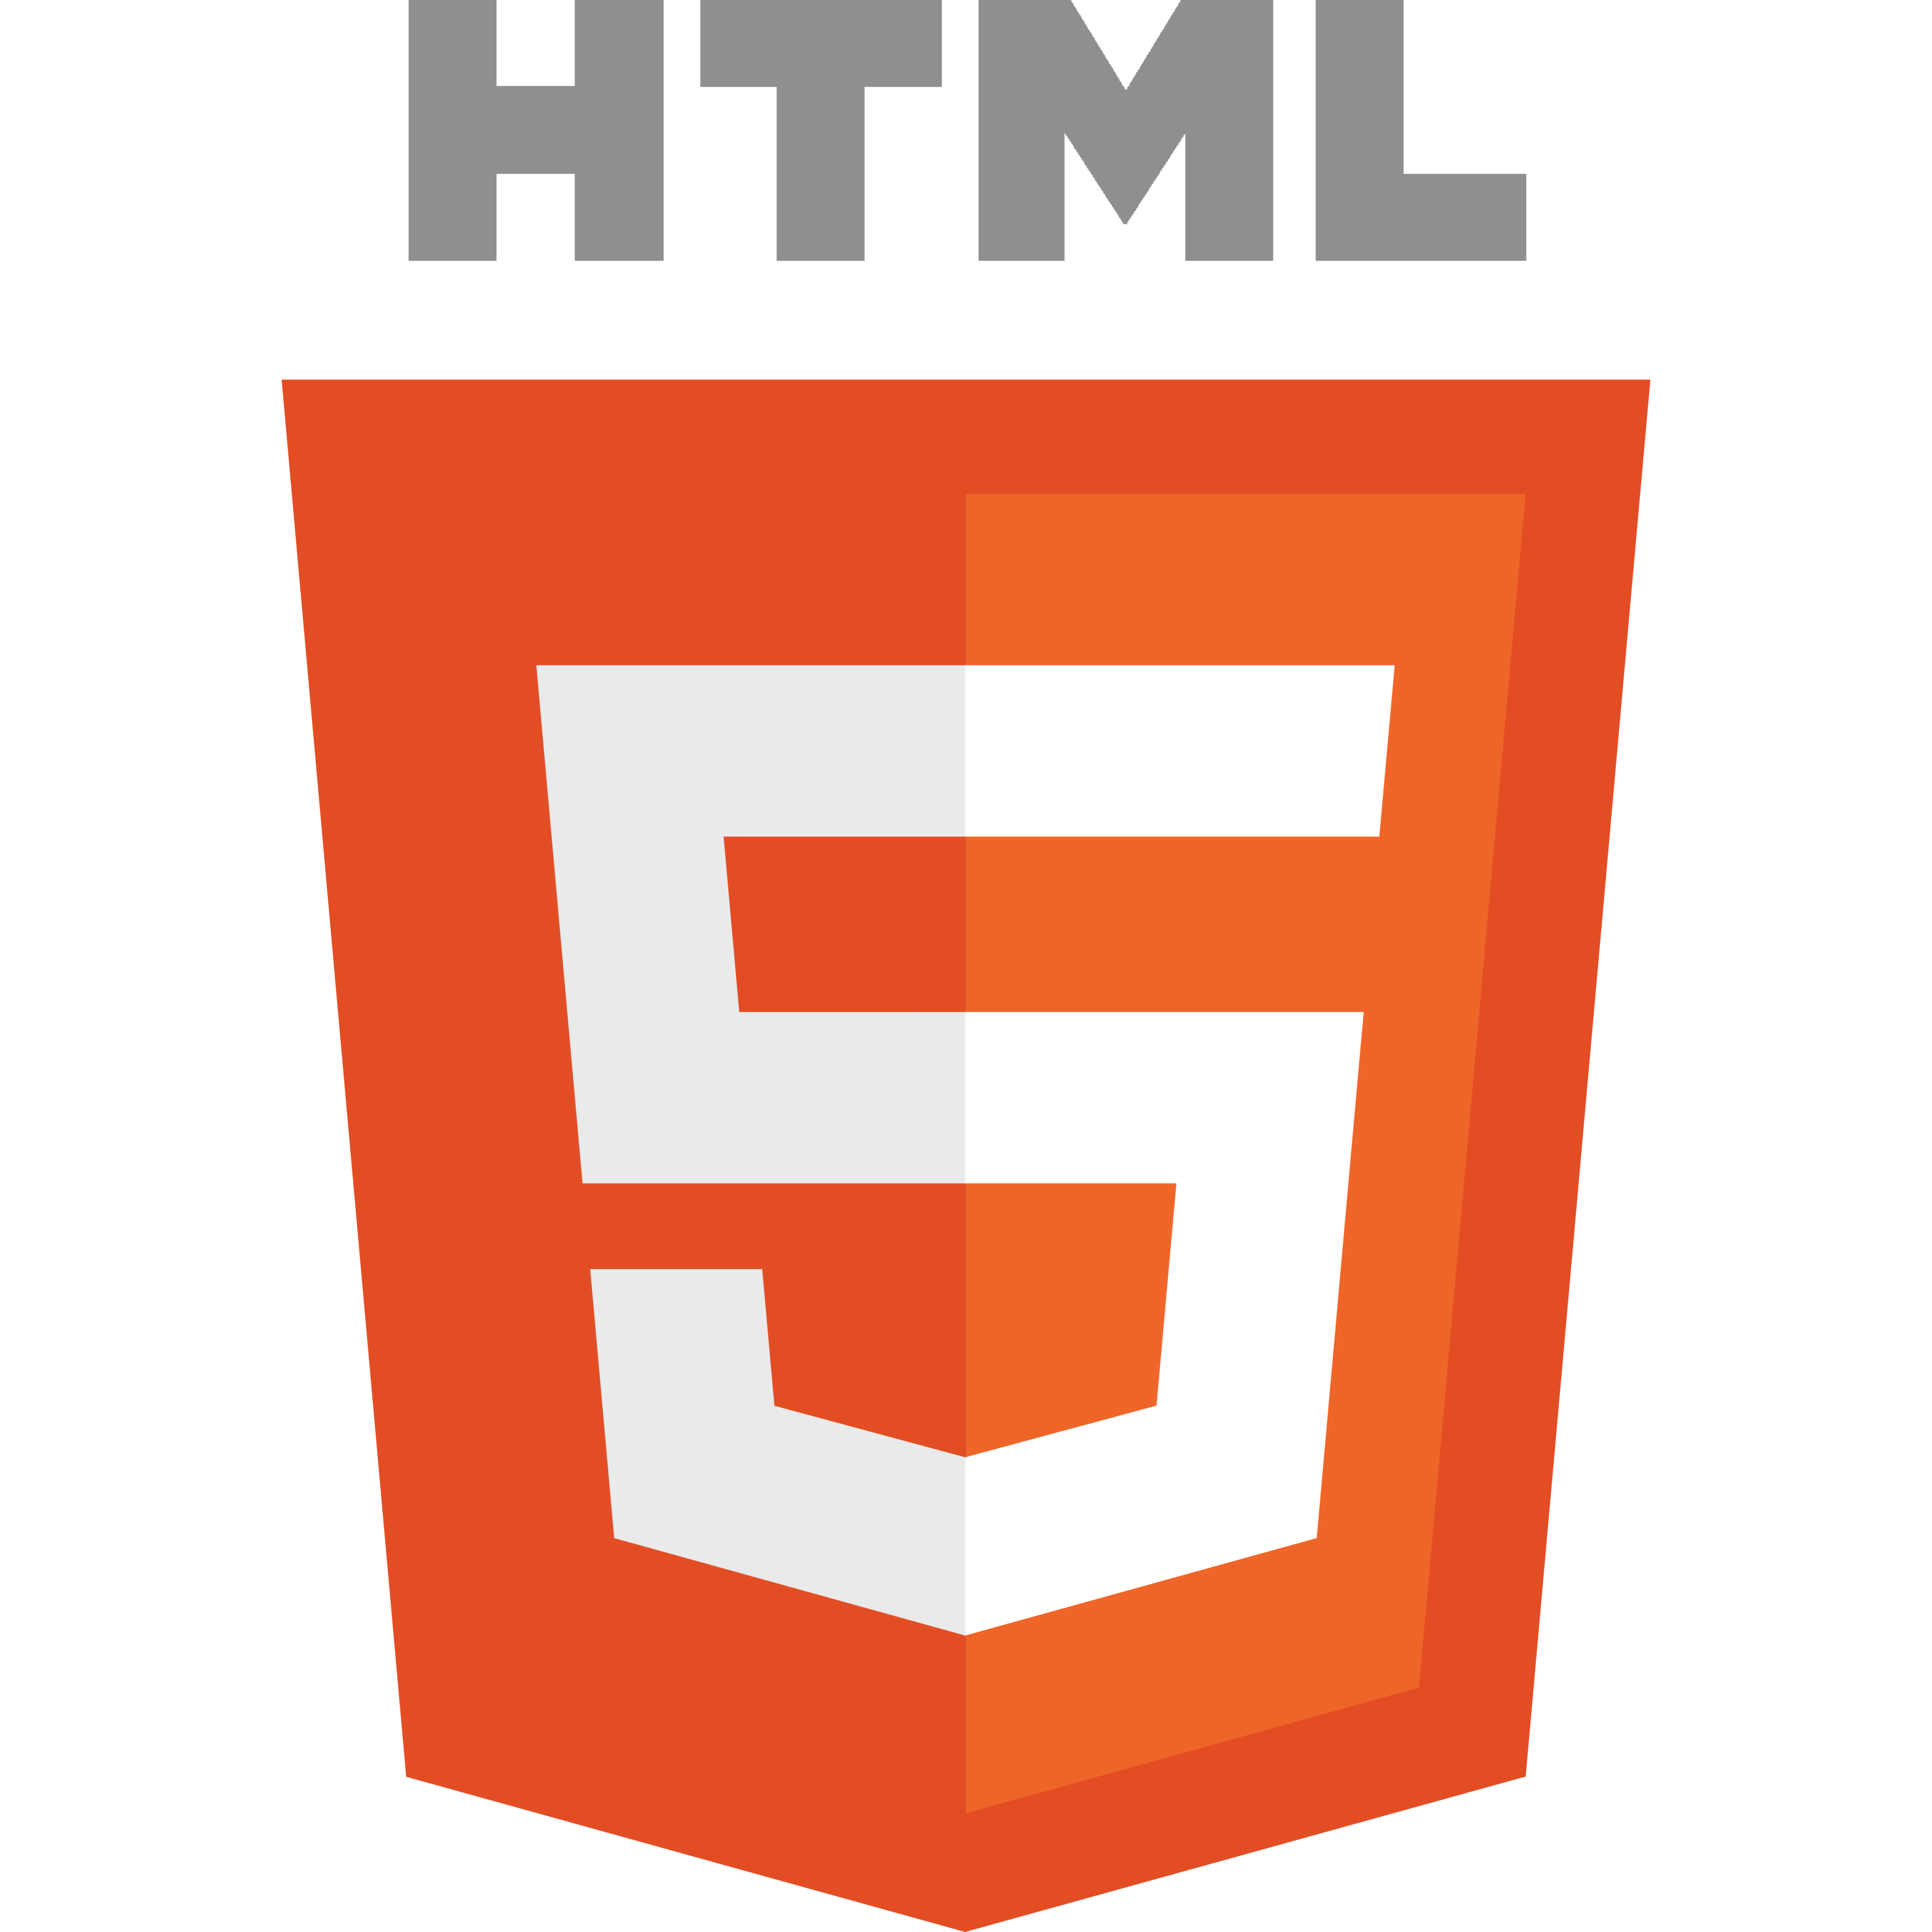 HTML5 Spelletjes